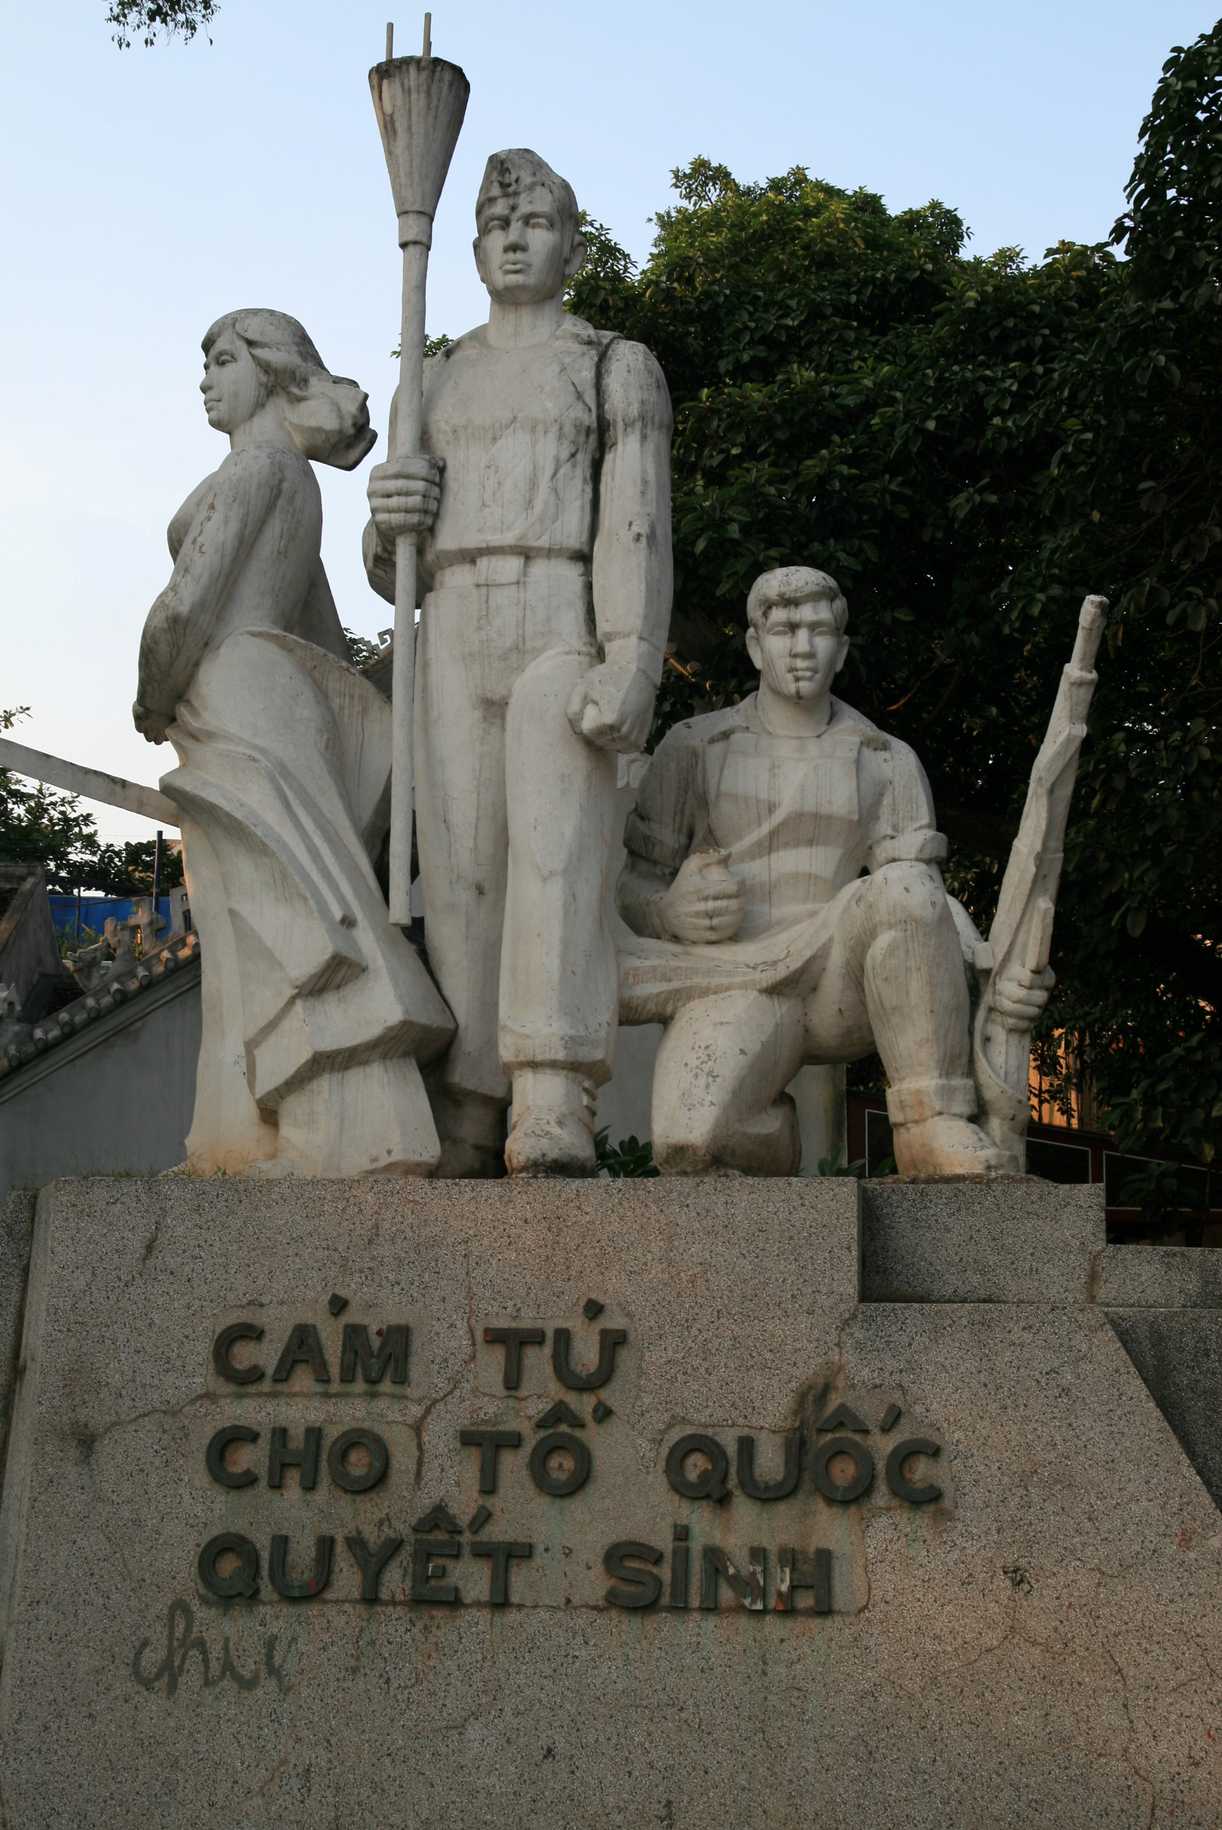 695 jours avant de célébrer les 1000 ans d'Hanoï en tant que capitale du Vietnam